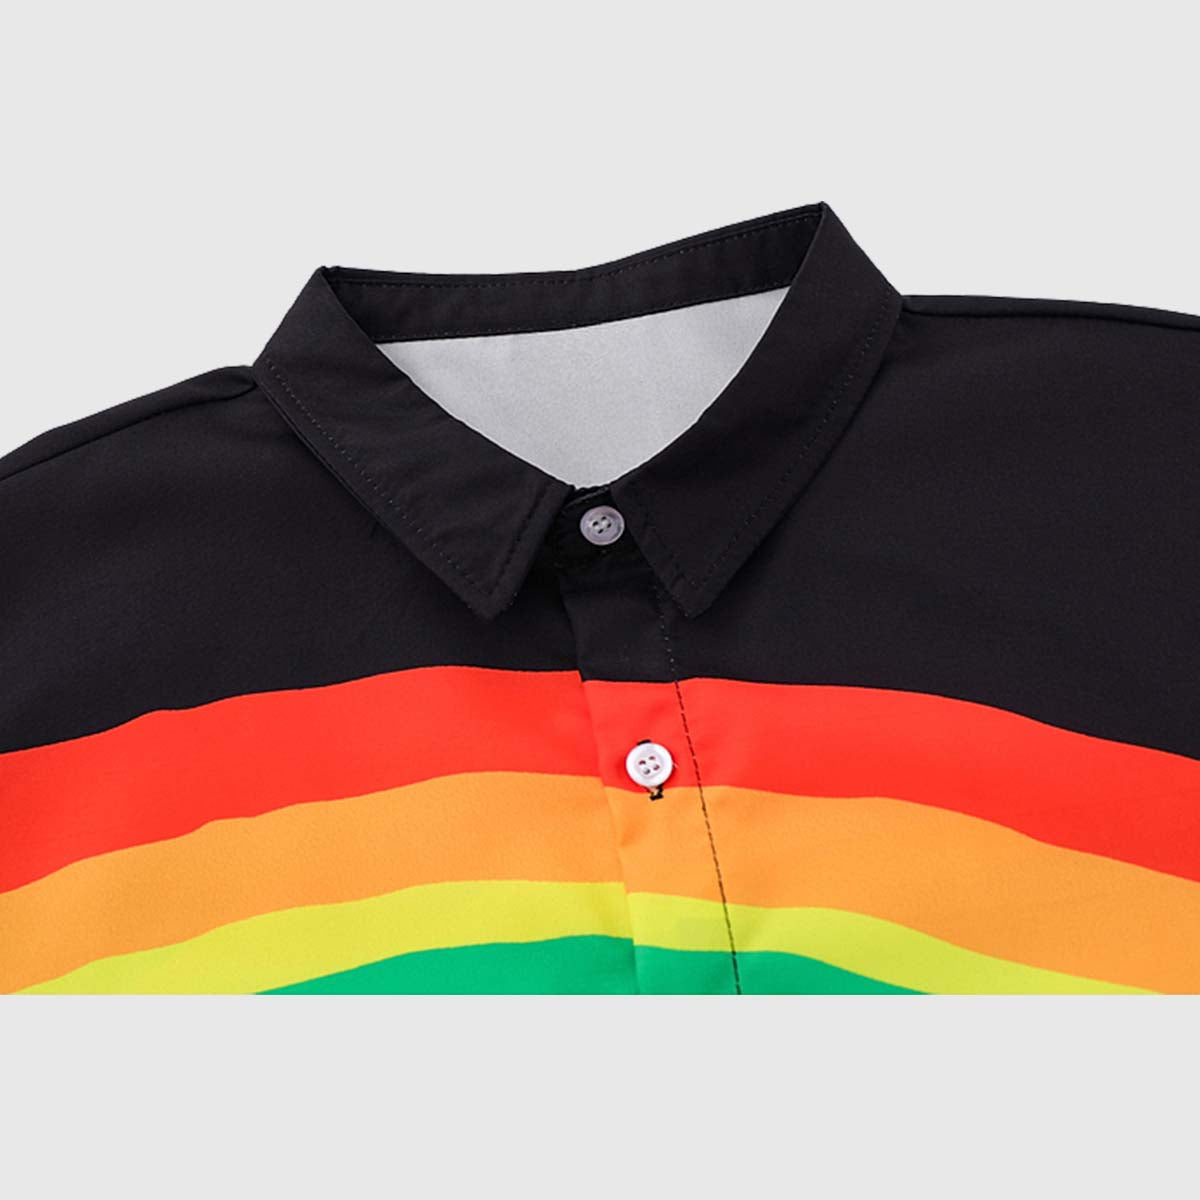 Rainbow Graphic Shirt